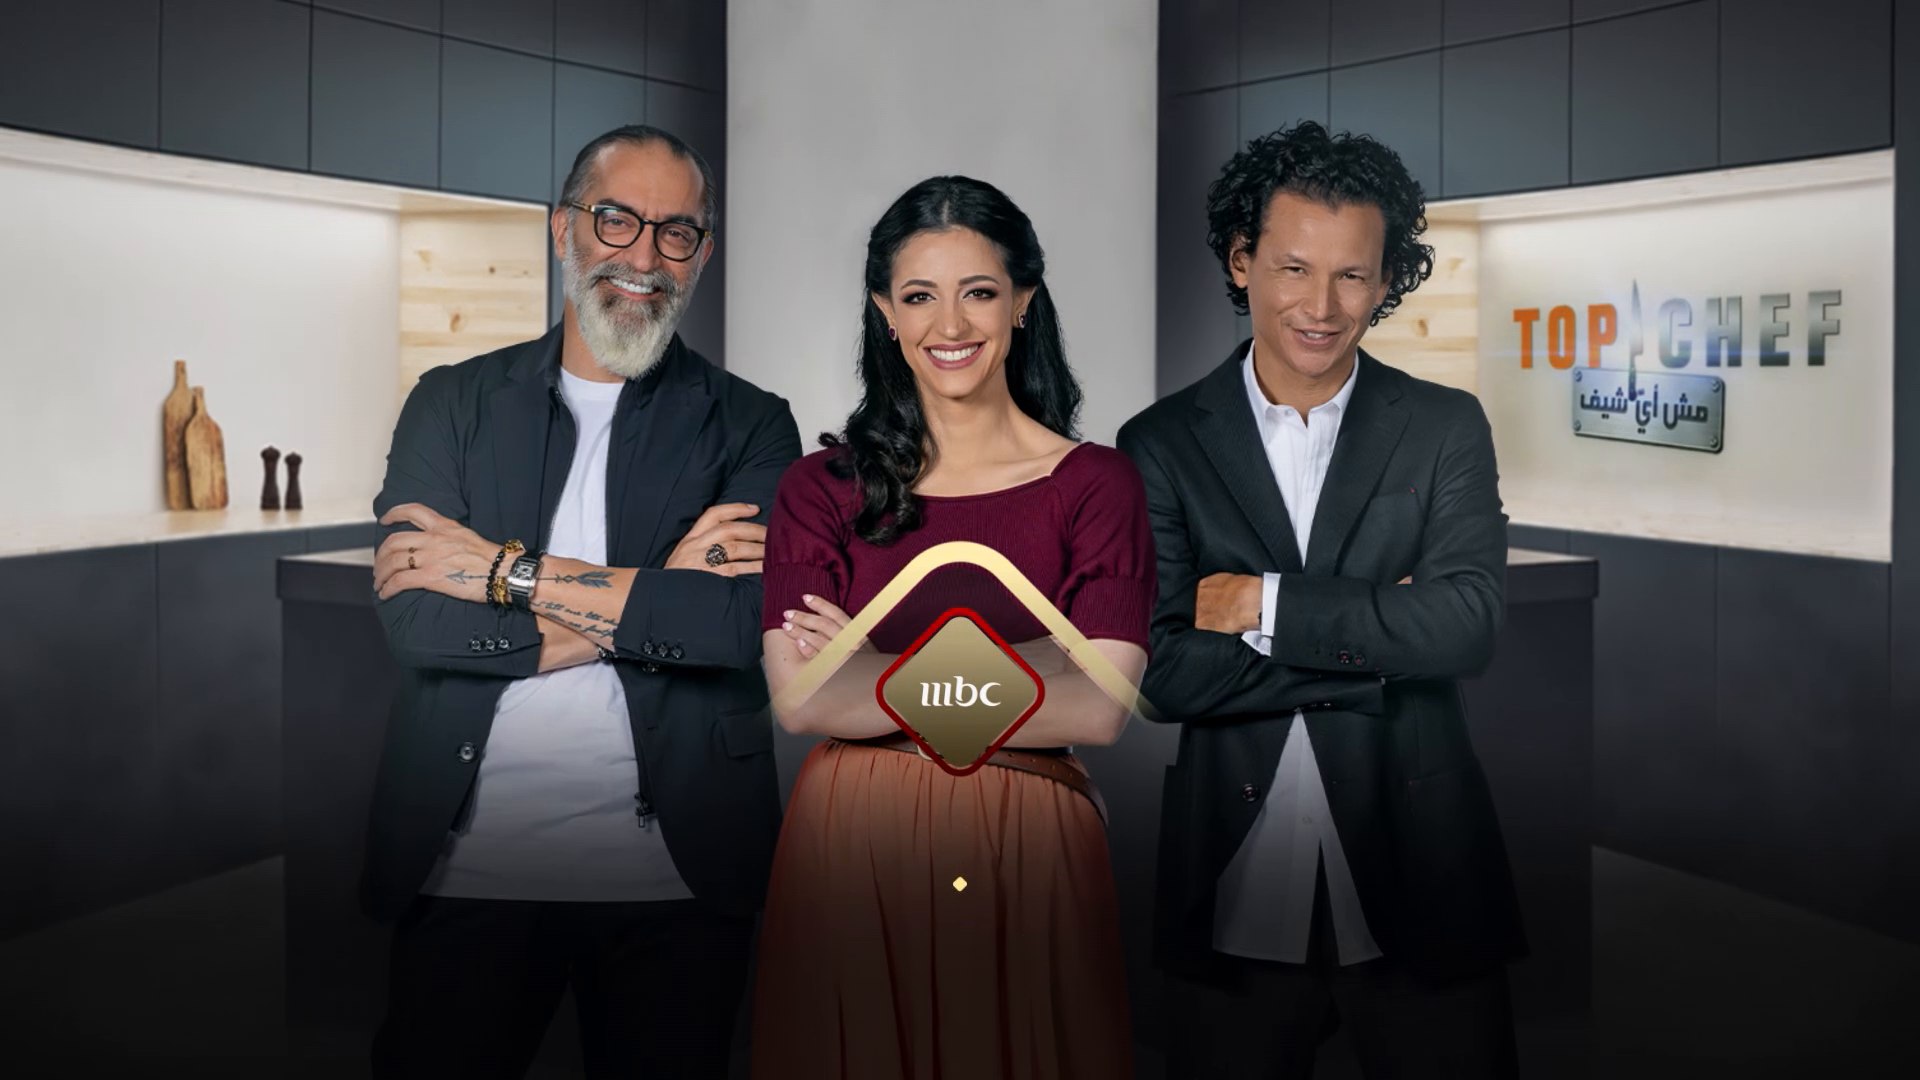 لا تفوتوا مشاهدة الحلقة القادمة من برنامج توب شيف بتحدي جديد الأربعاء  الساعة التاسعة والنصف مساءً بتوقيت السعودية على #MBC1 - فيديو Dailymotion